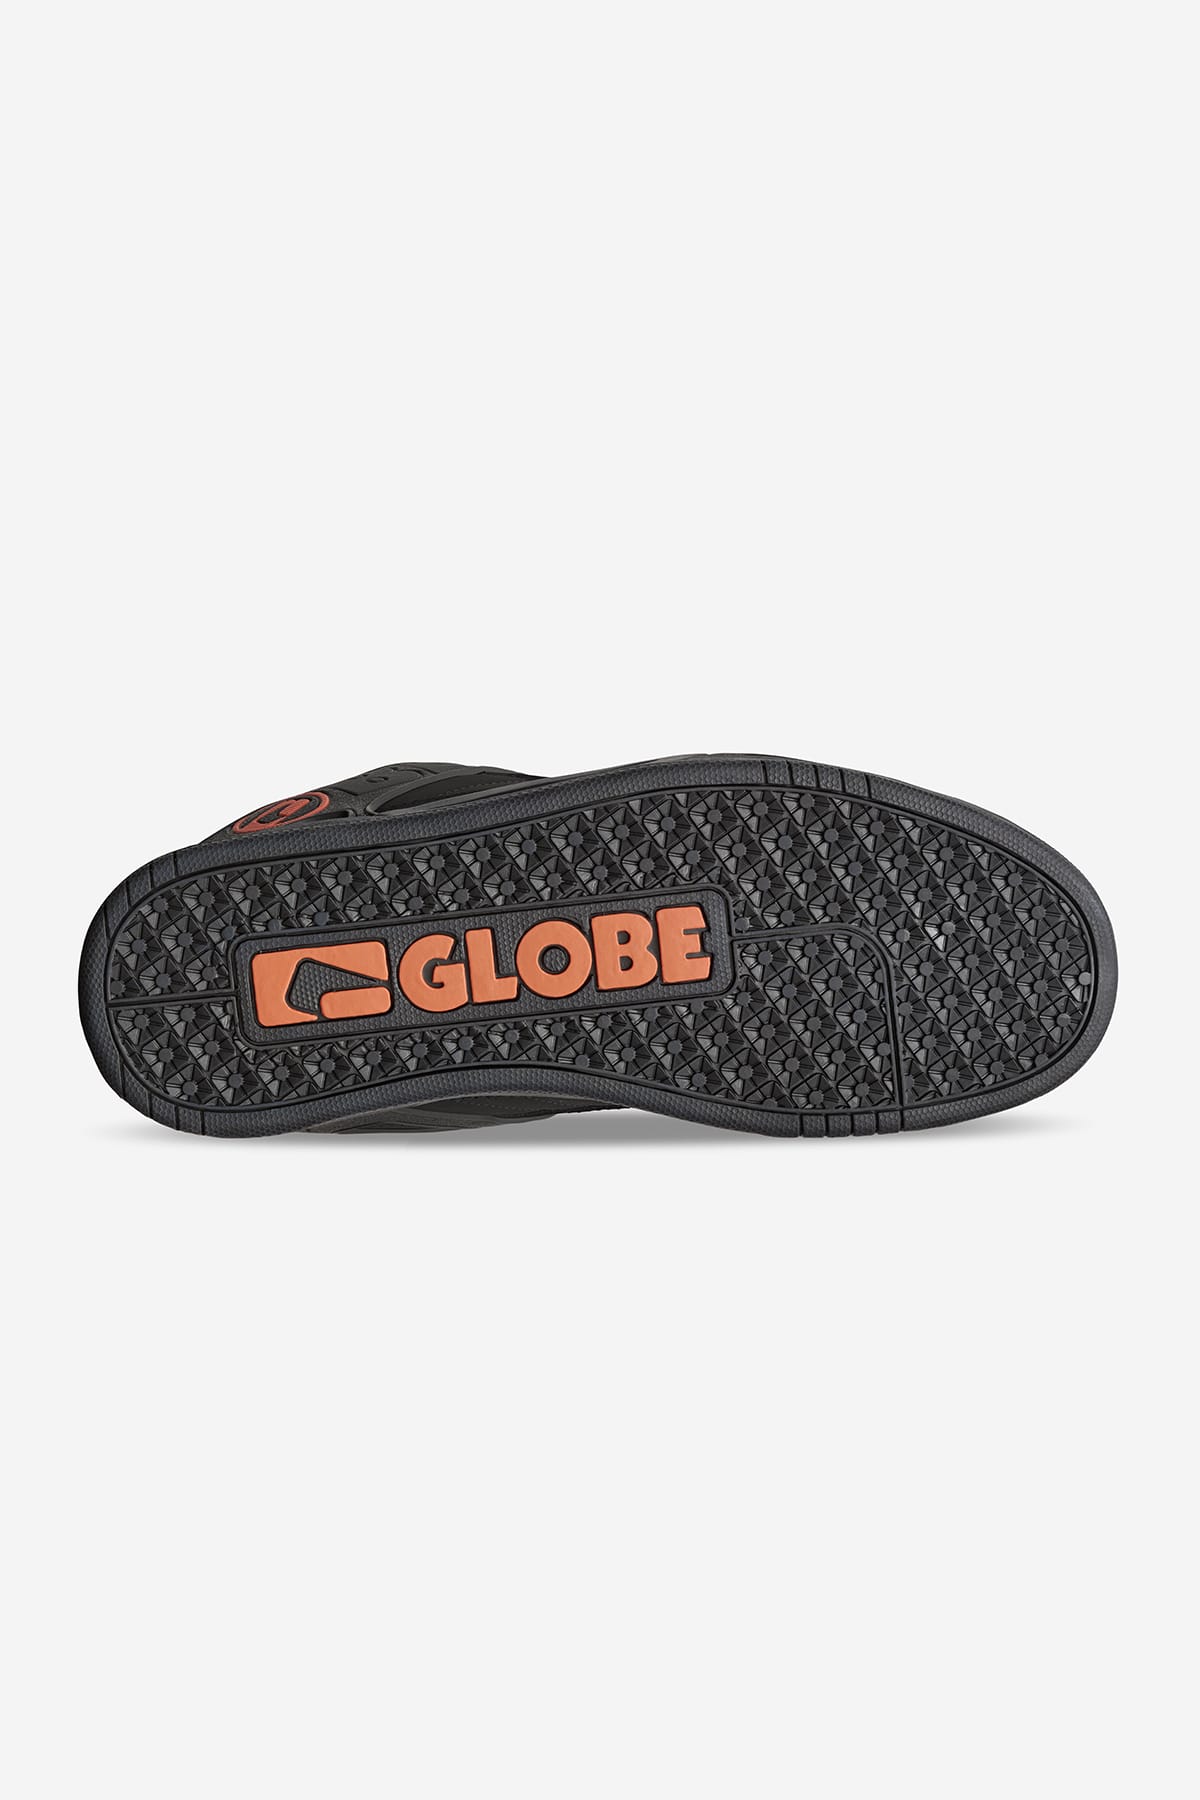 Globe - Tilt - Black/Black/Bronze - Skate Shoes